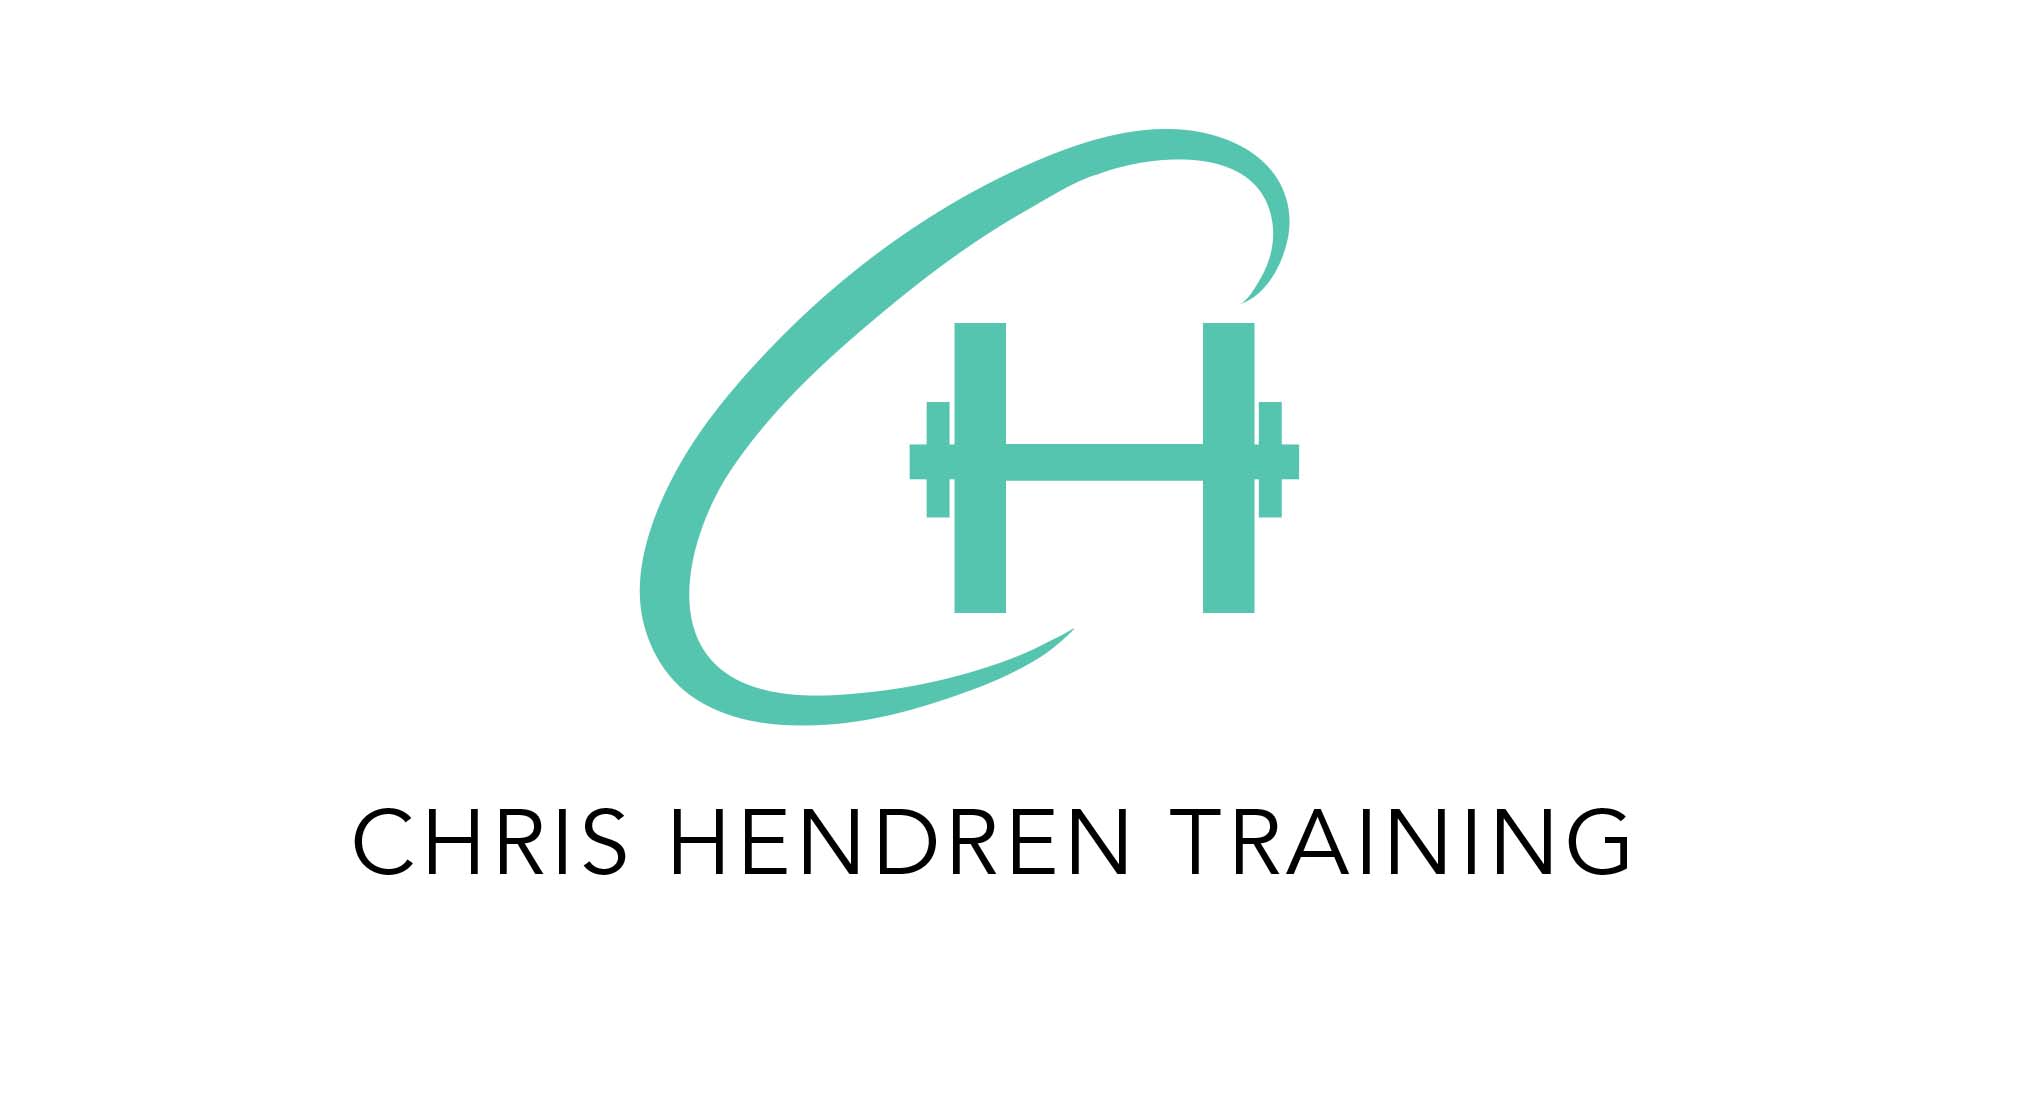 Chris Hendren Training logo design